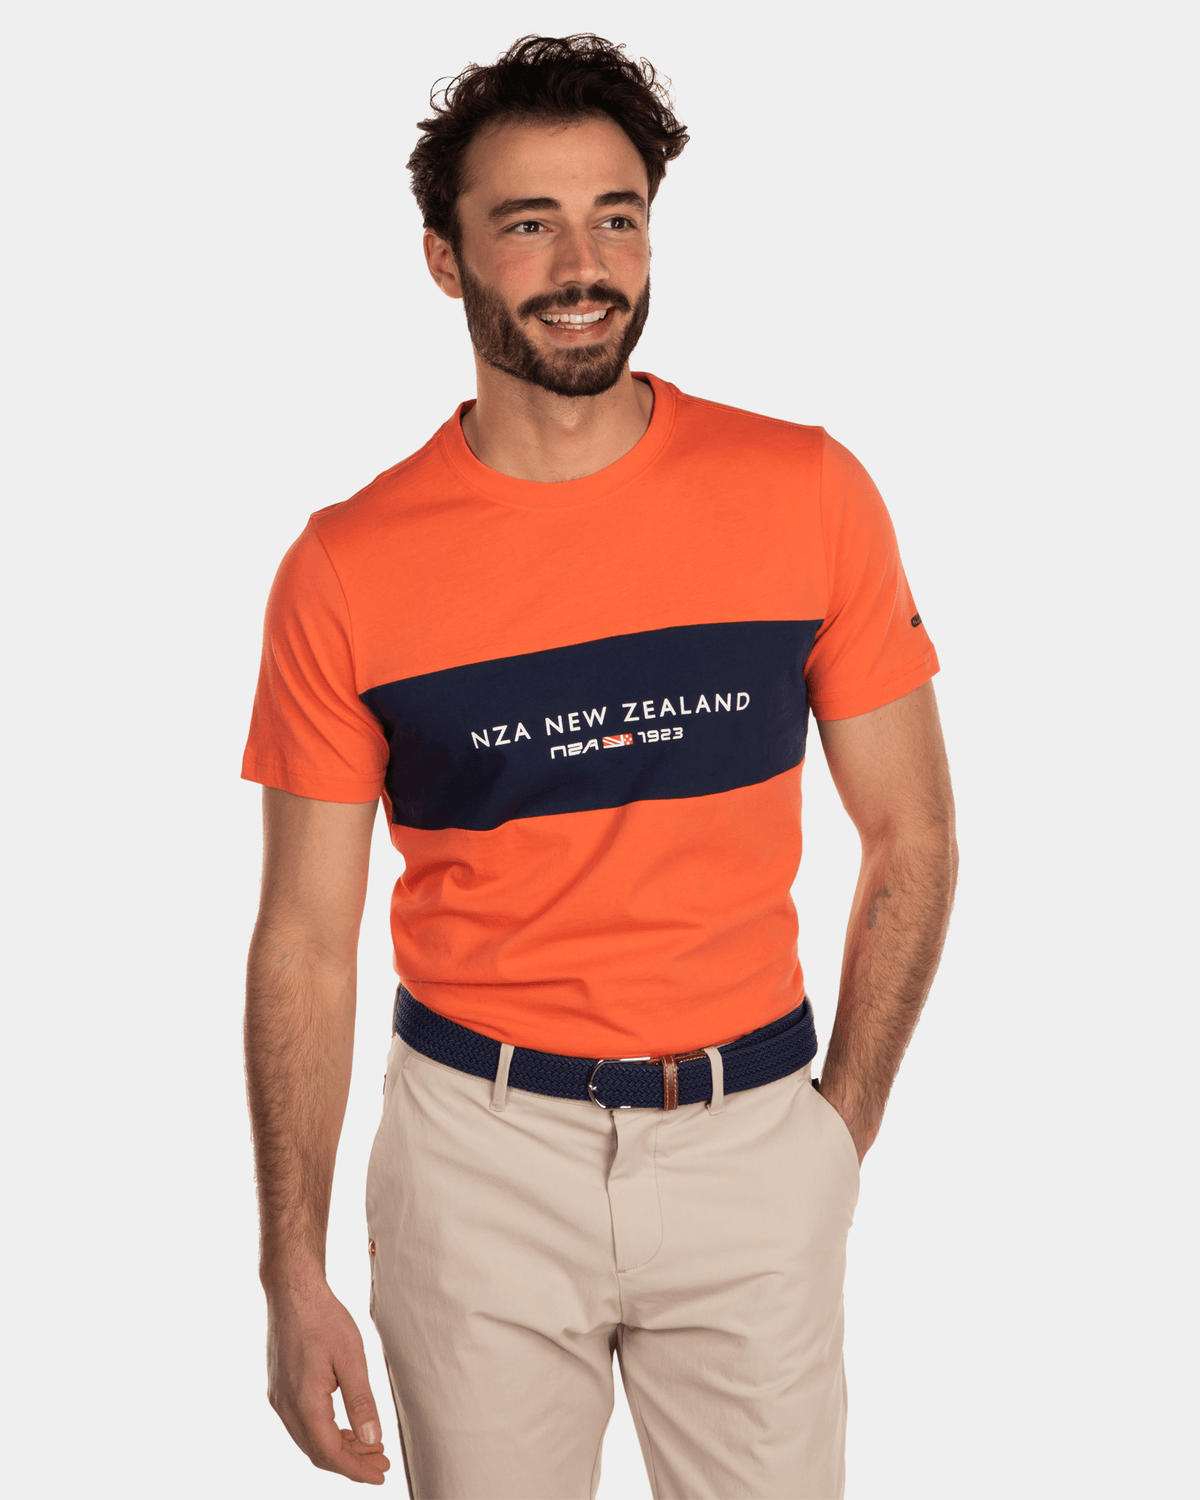 Cotton t-shirt with logo - Burned Orange